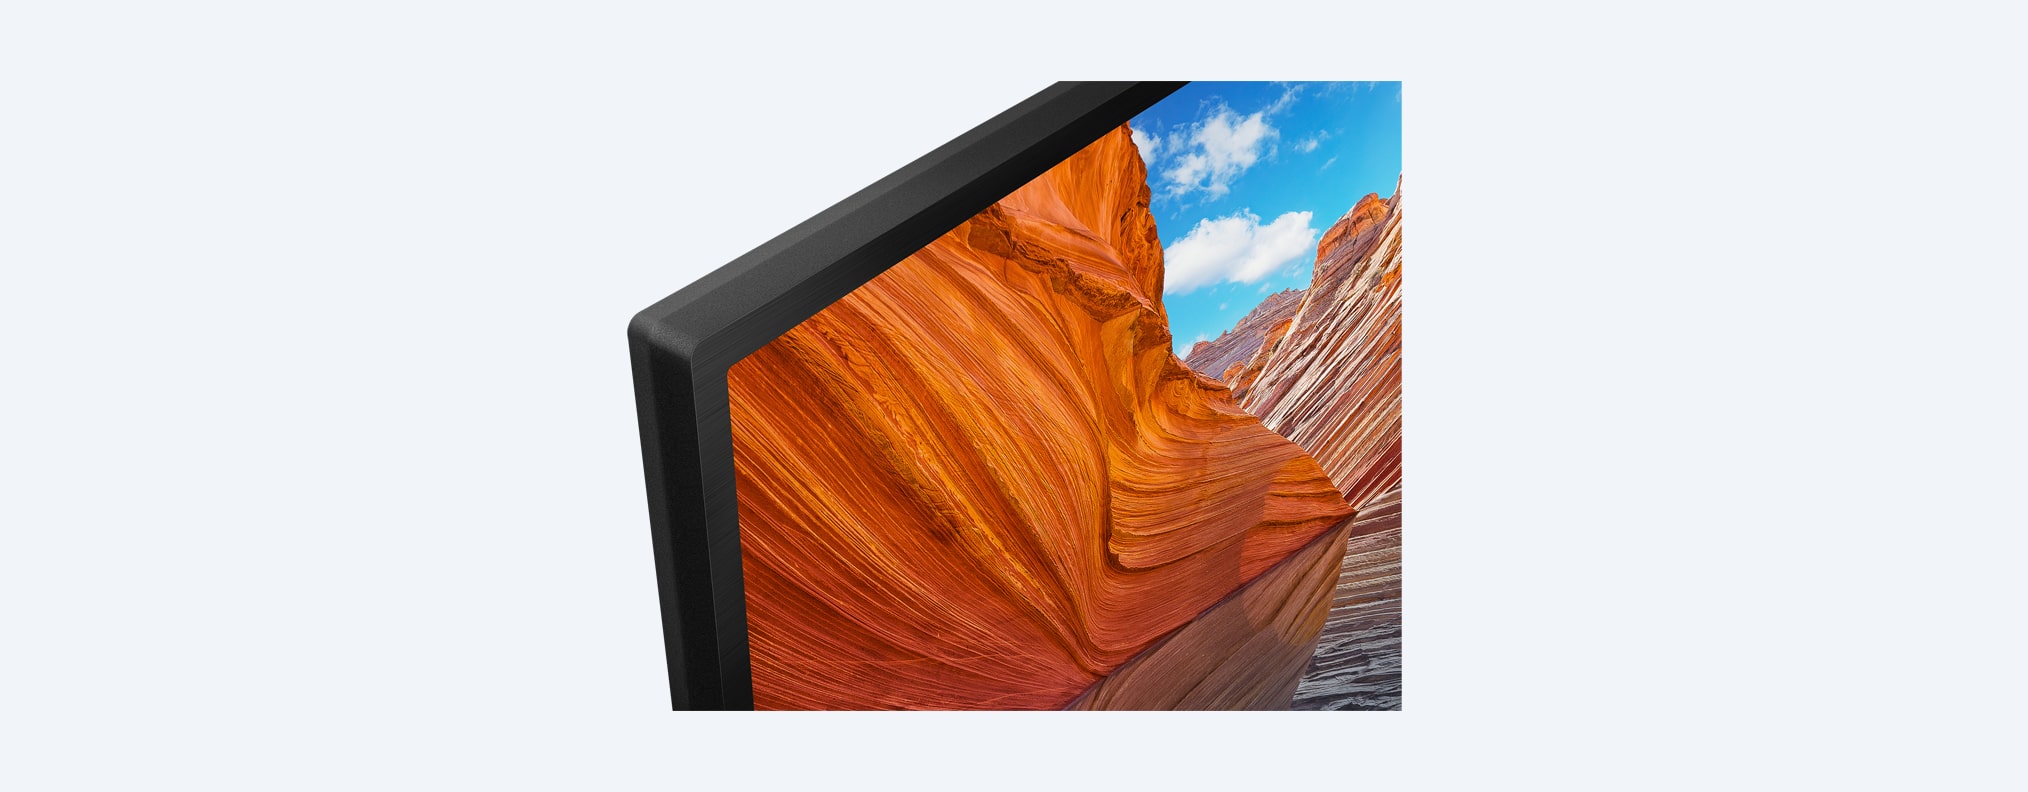 X80J / X81J | 4K Ultra HD | טווח דינמי גבוה (HDR) | טלוויזיה חכמה (Google TV)